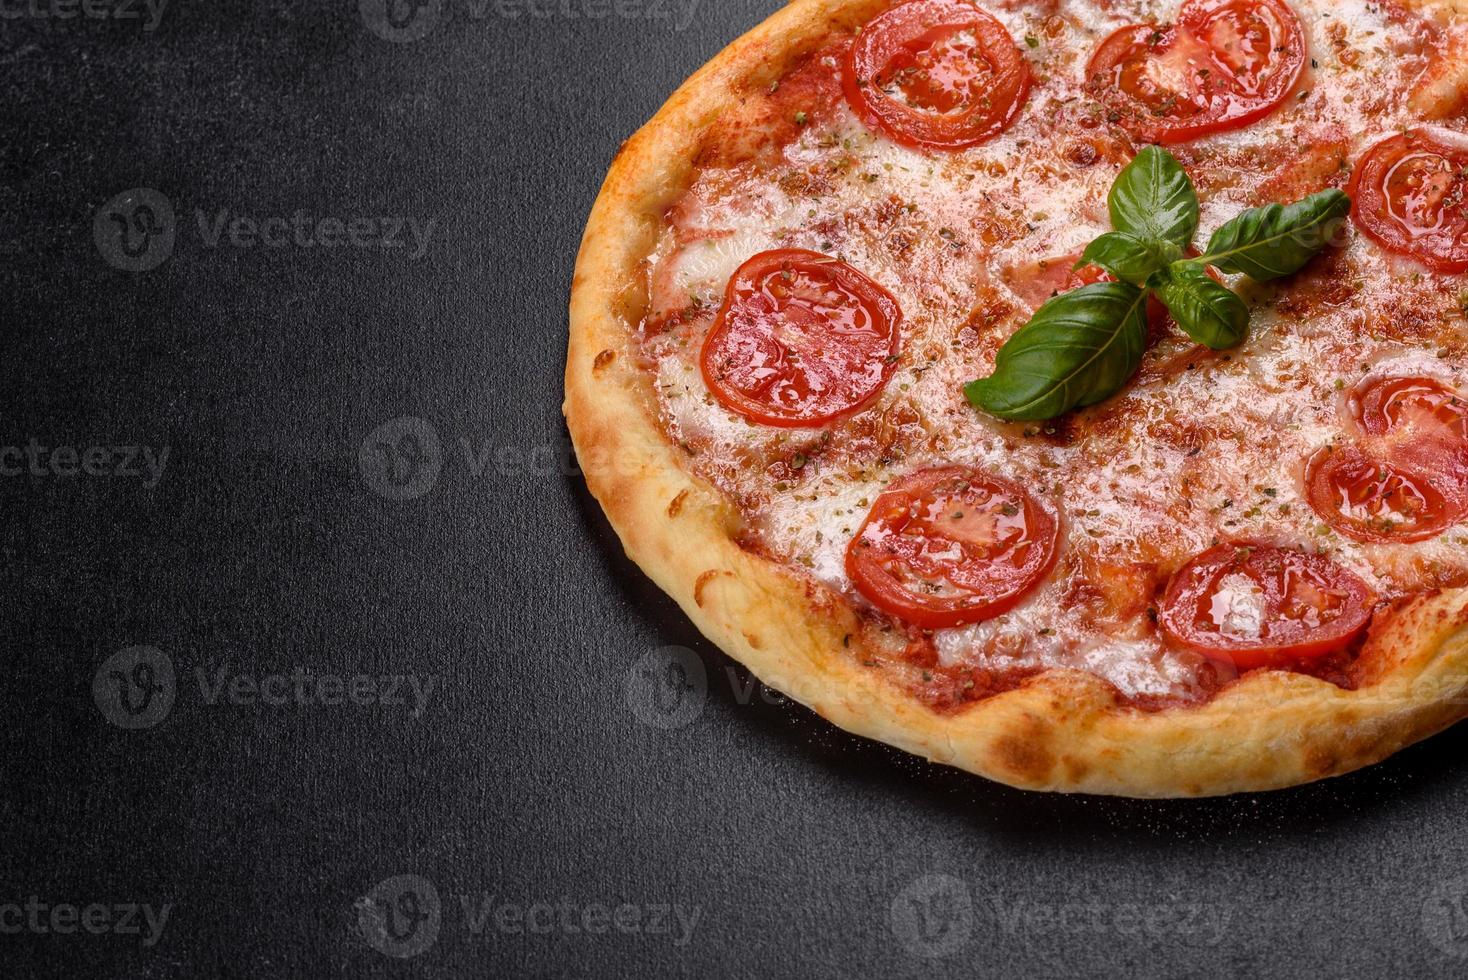 välsmakande färsk ugnspizza med tomater, ost och basilika på en konkret bakgrund foto